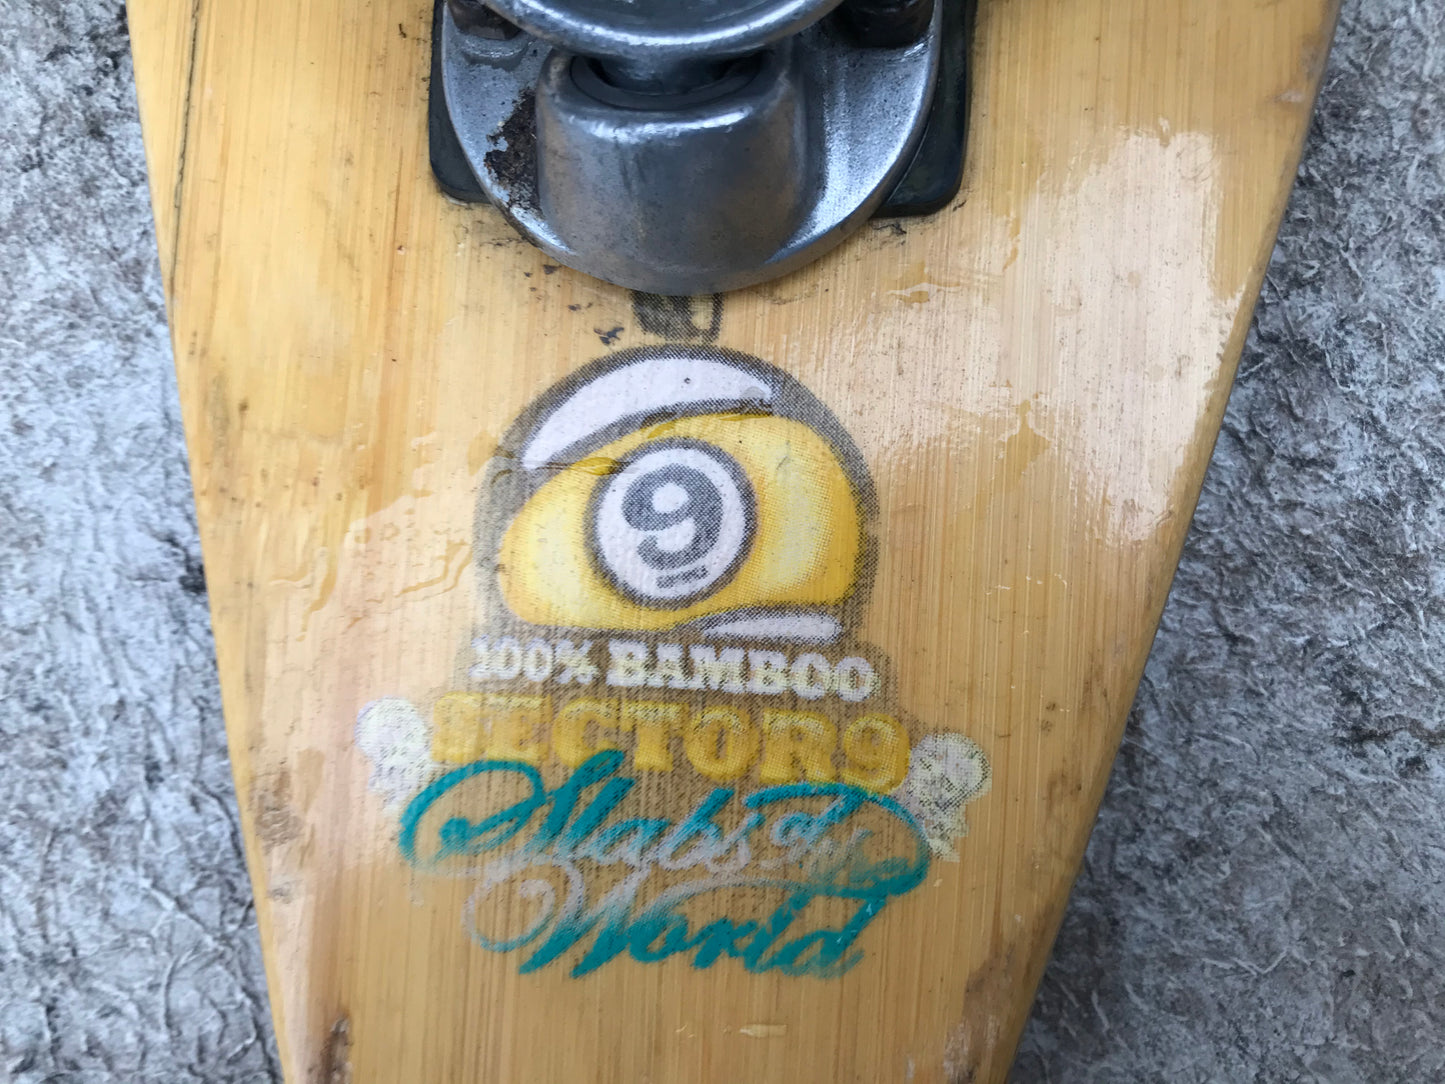 SkateBoard Long Board Sector Bamboo 45 inch